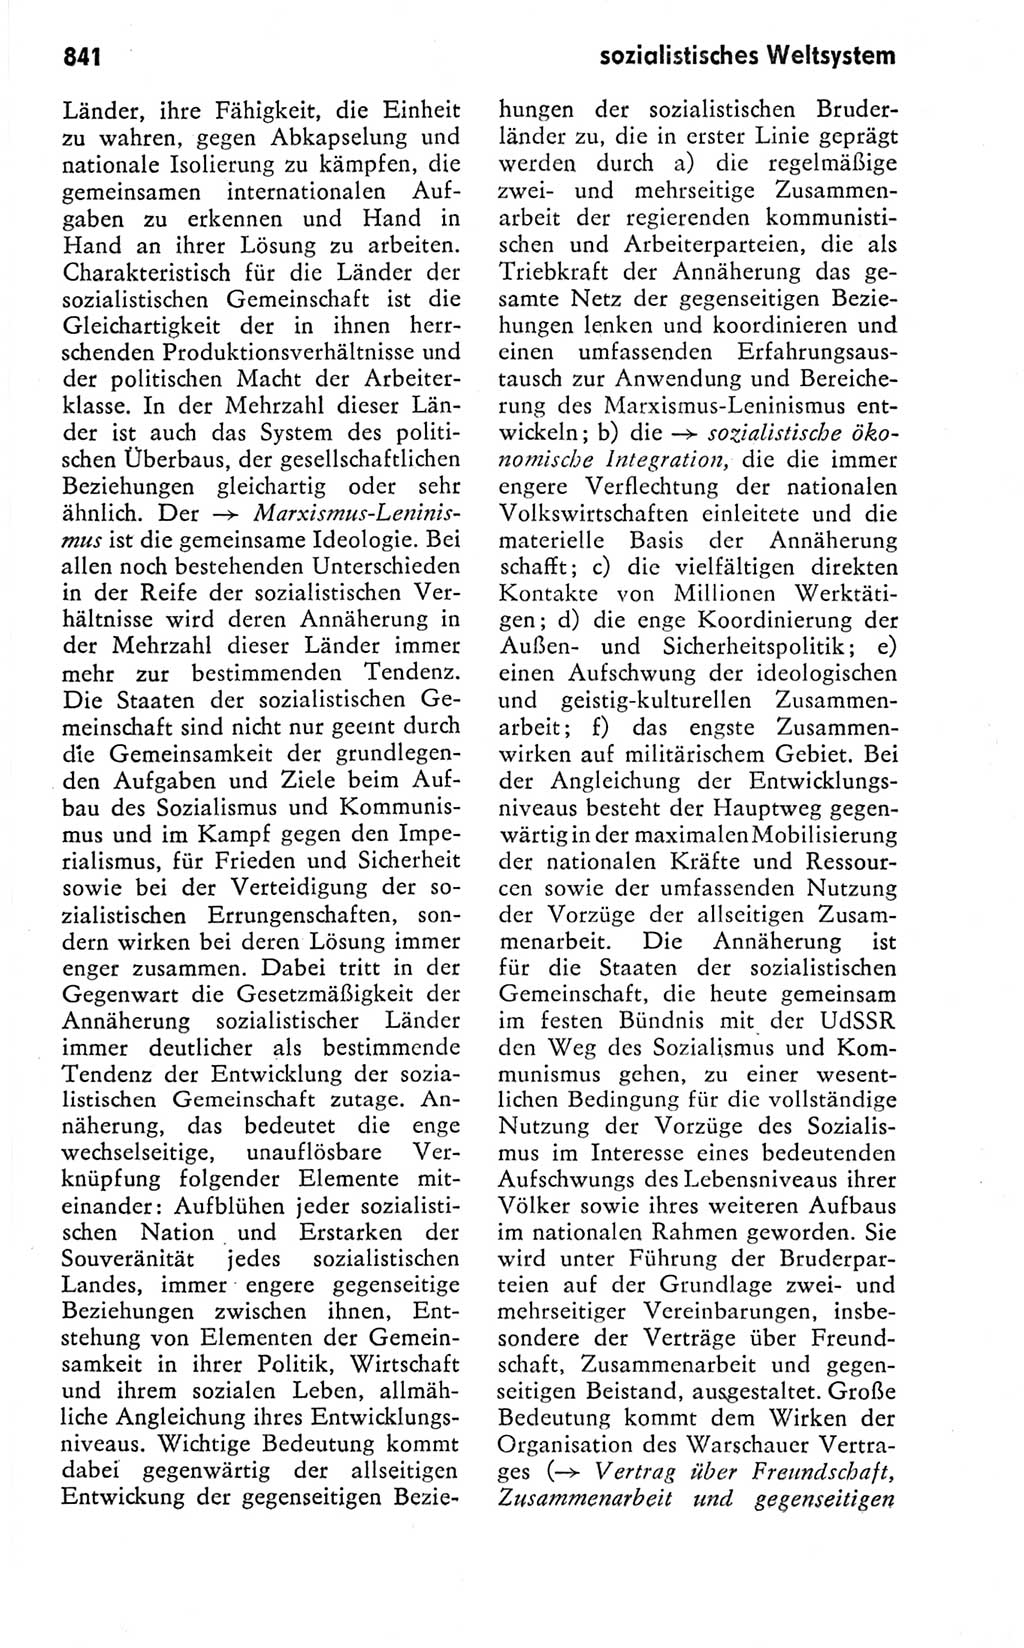 Kleines politisches Wörterbuch [Deutsche Demokratische Republik (DDR)] 1978, Seite 841 (Kl. pol. Wb. DDR 1978, S. 841)